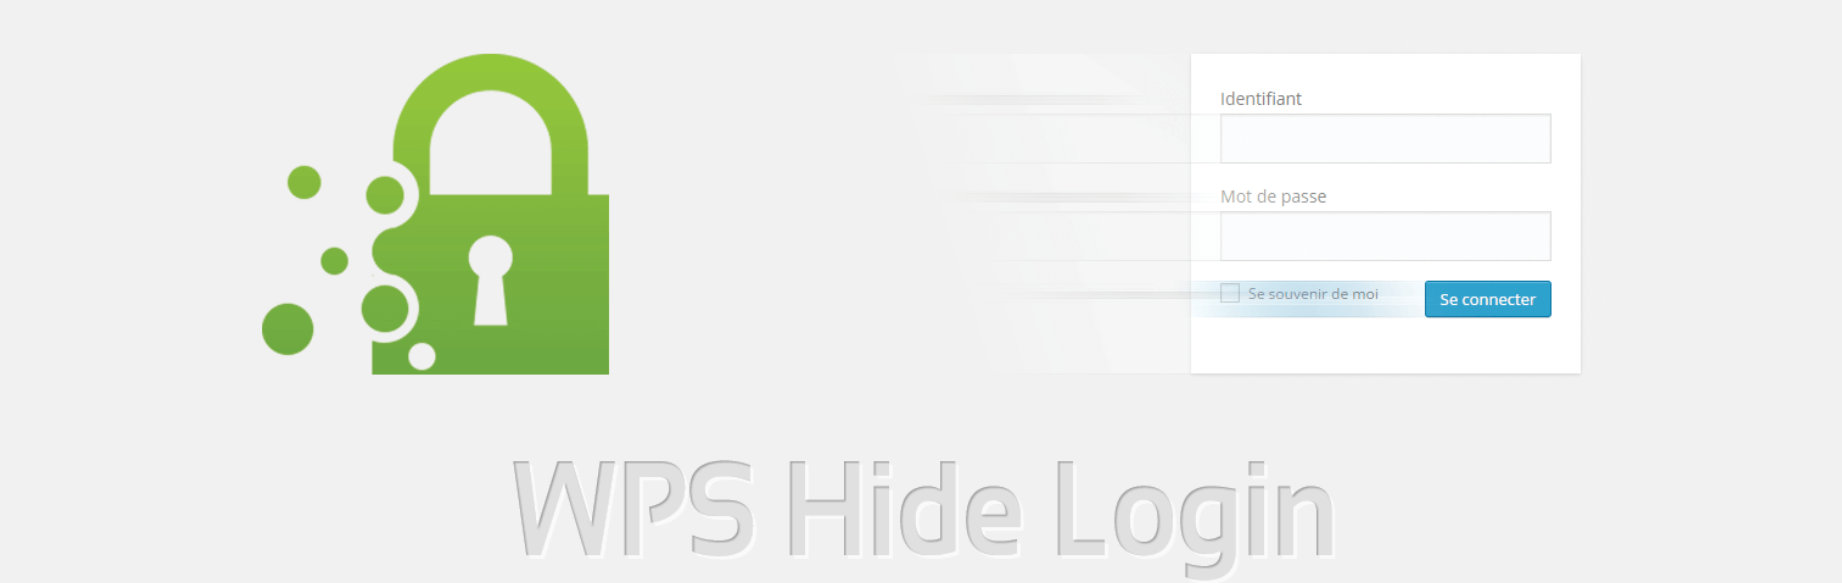 The WPS Hide Login plugin.